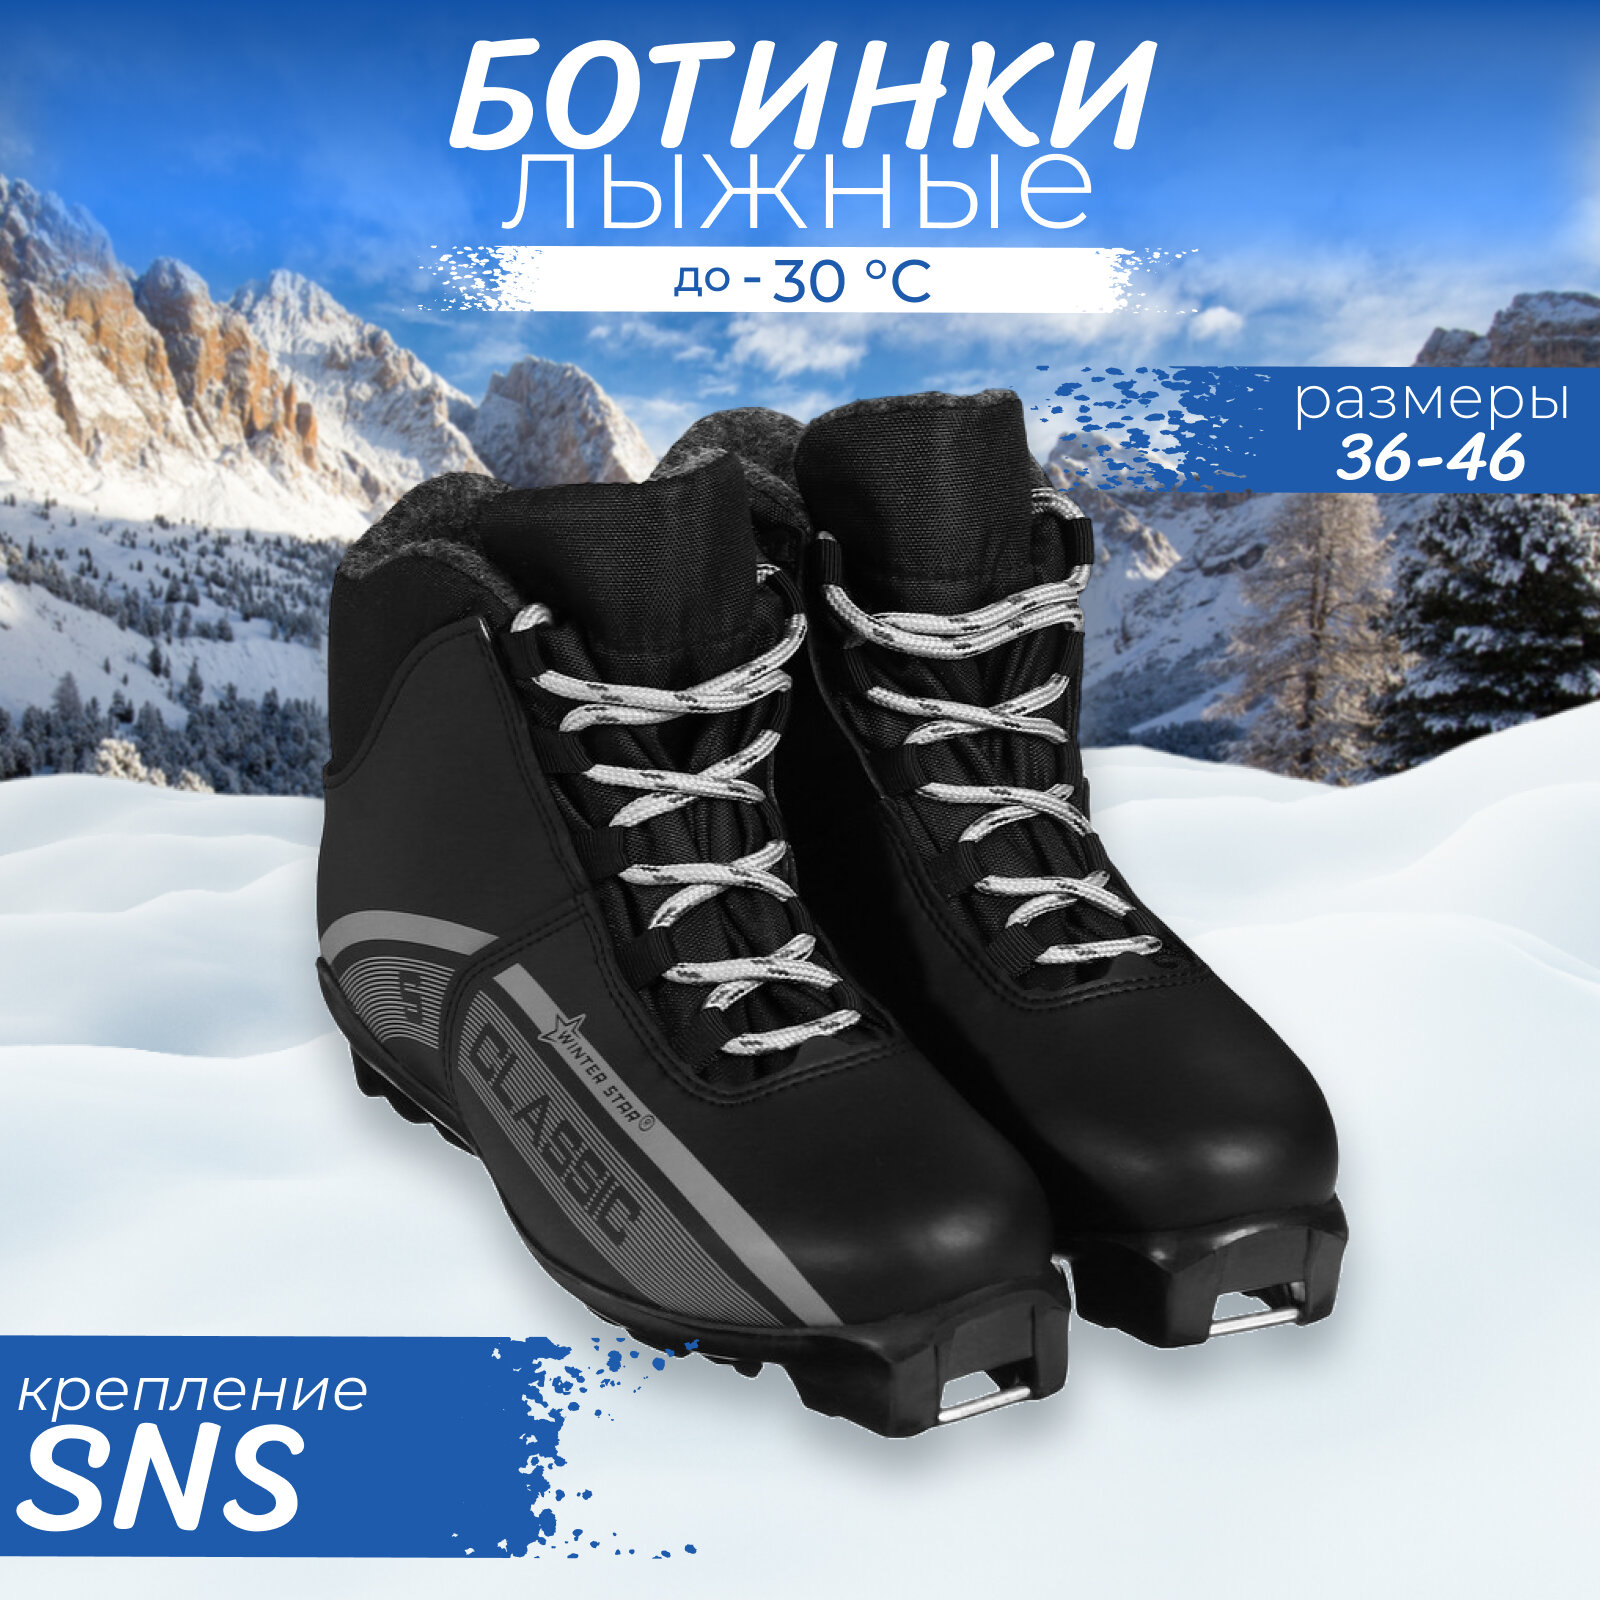 Ботинки лыжные Winter Star classic, Sns, р. 37, цвет чёрный, лого серый Winter Star 9796156